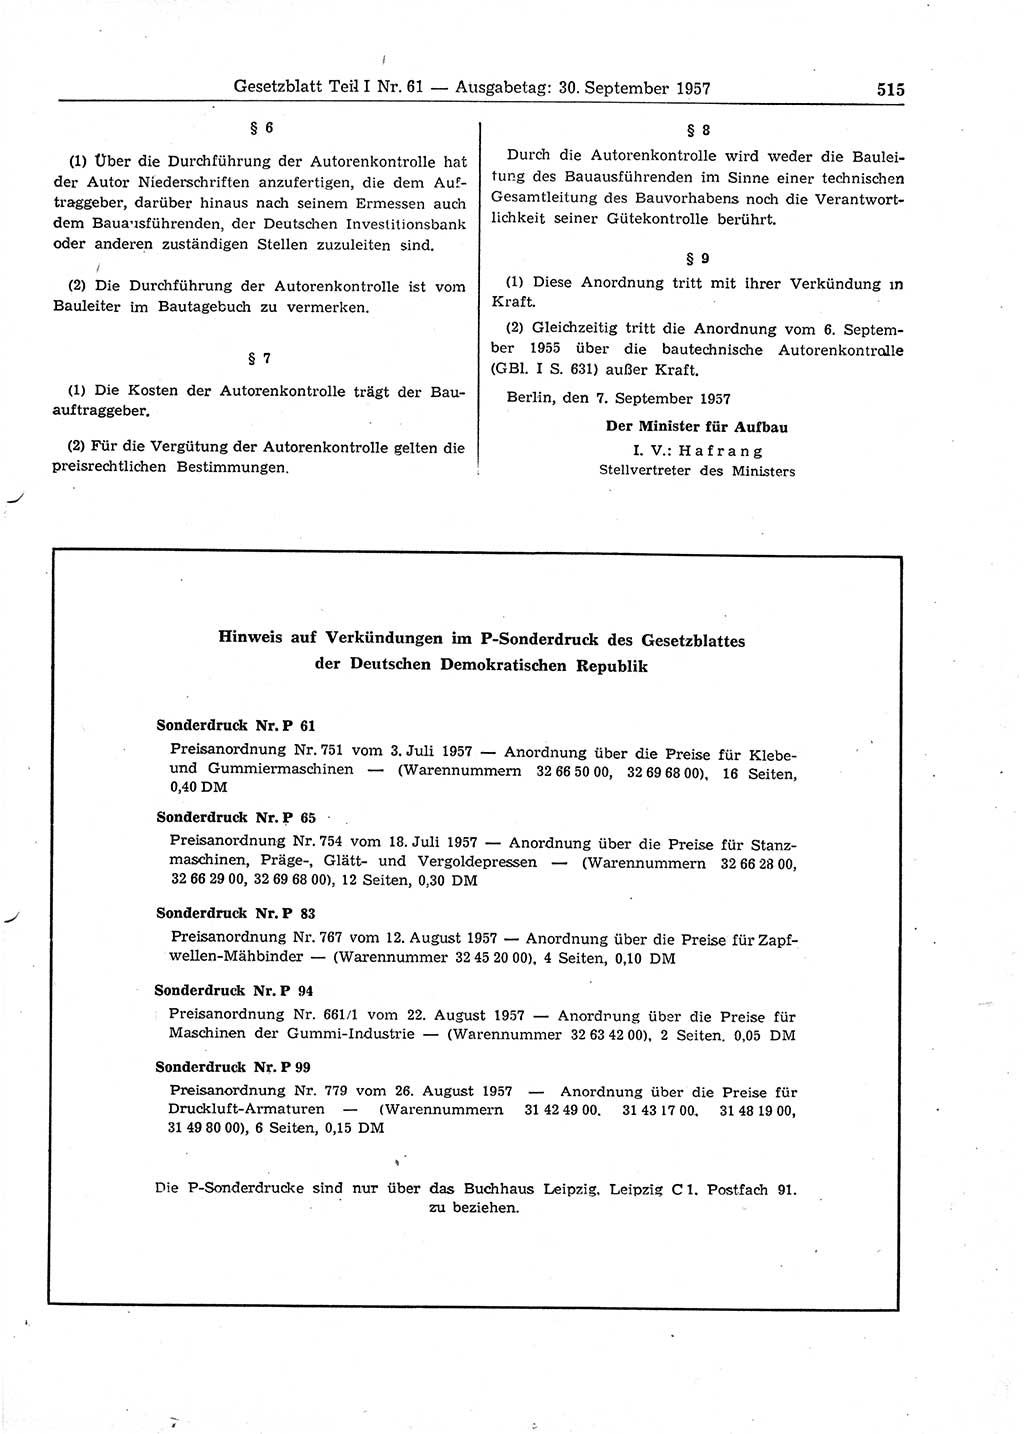 Gesetzblatt (GBl.) der Deutschen Demokratischen Republik (DDR) Teil Ⅰ 1957, Seite 515 (GBl. DDR Ⅰ 1957, S. 515)